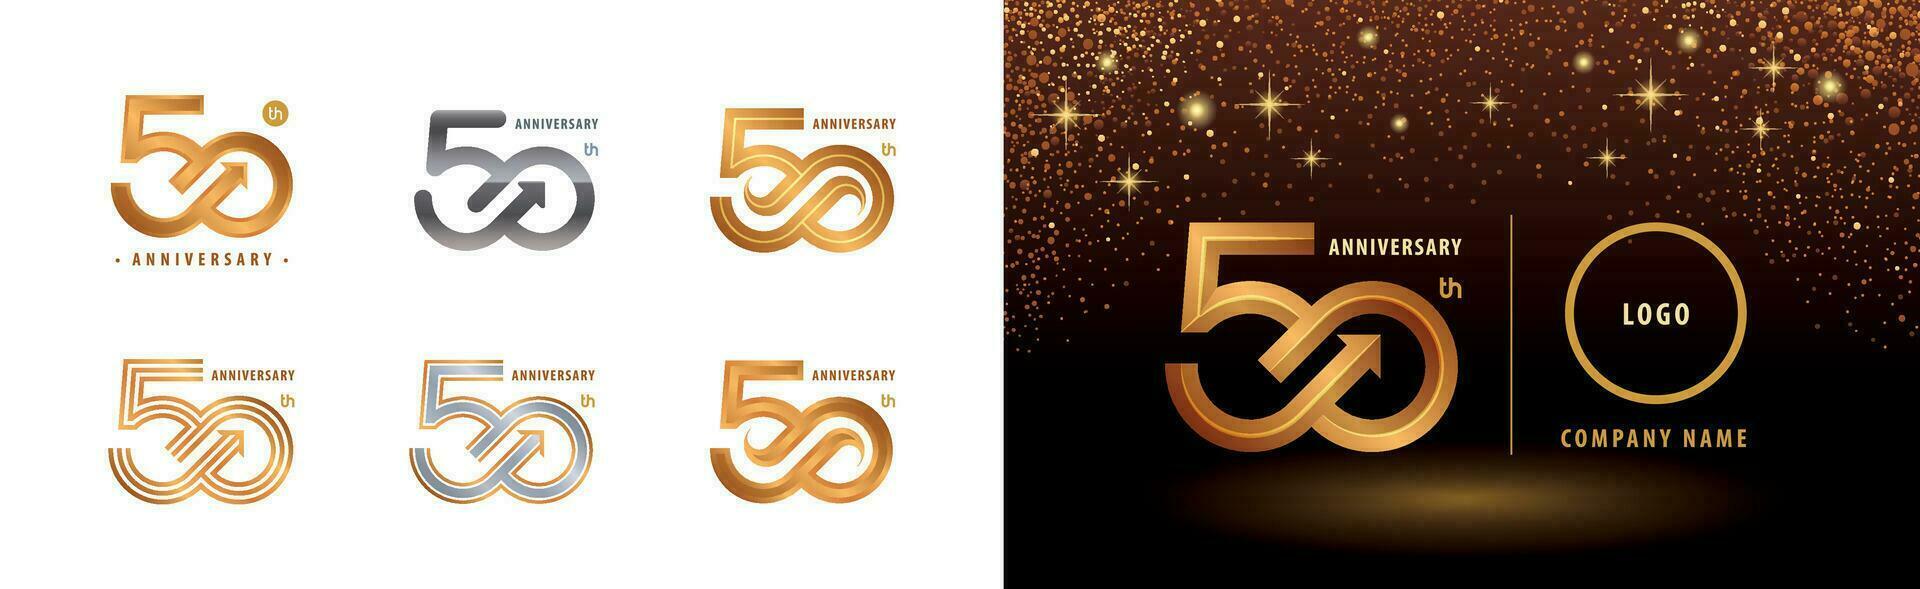 einstellen von 50 .. Jahrestag Logo Design, fünfzig Jahre Jahrestag Feier vektor